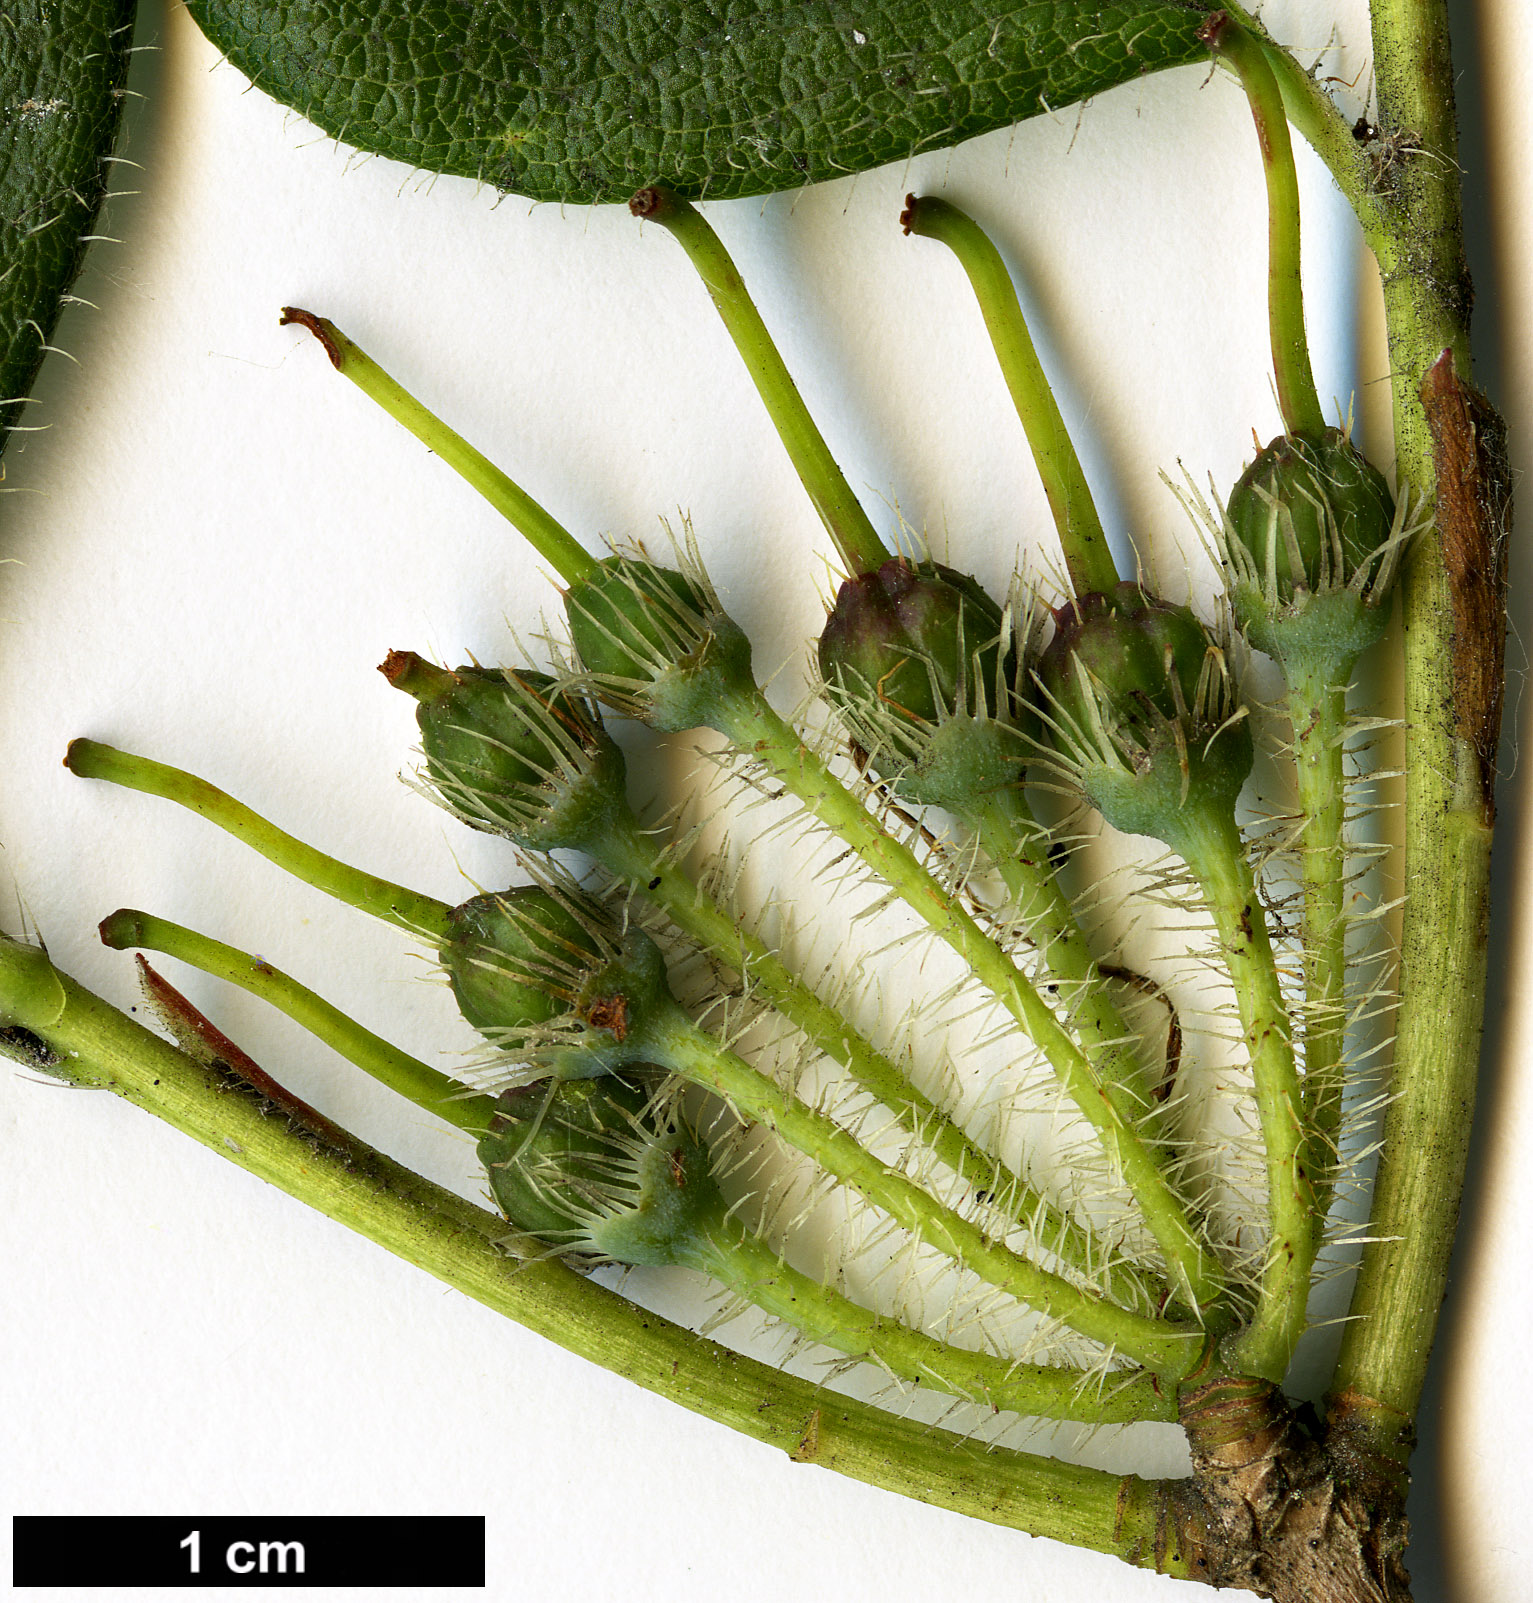 High resolution image: Family: Ericaceae - Genus: Menziesia - Taxon: ciliicalyx - SpeciesSub: var. purpurea